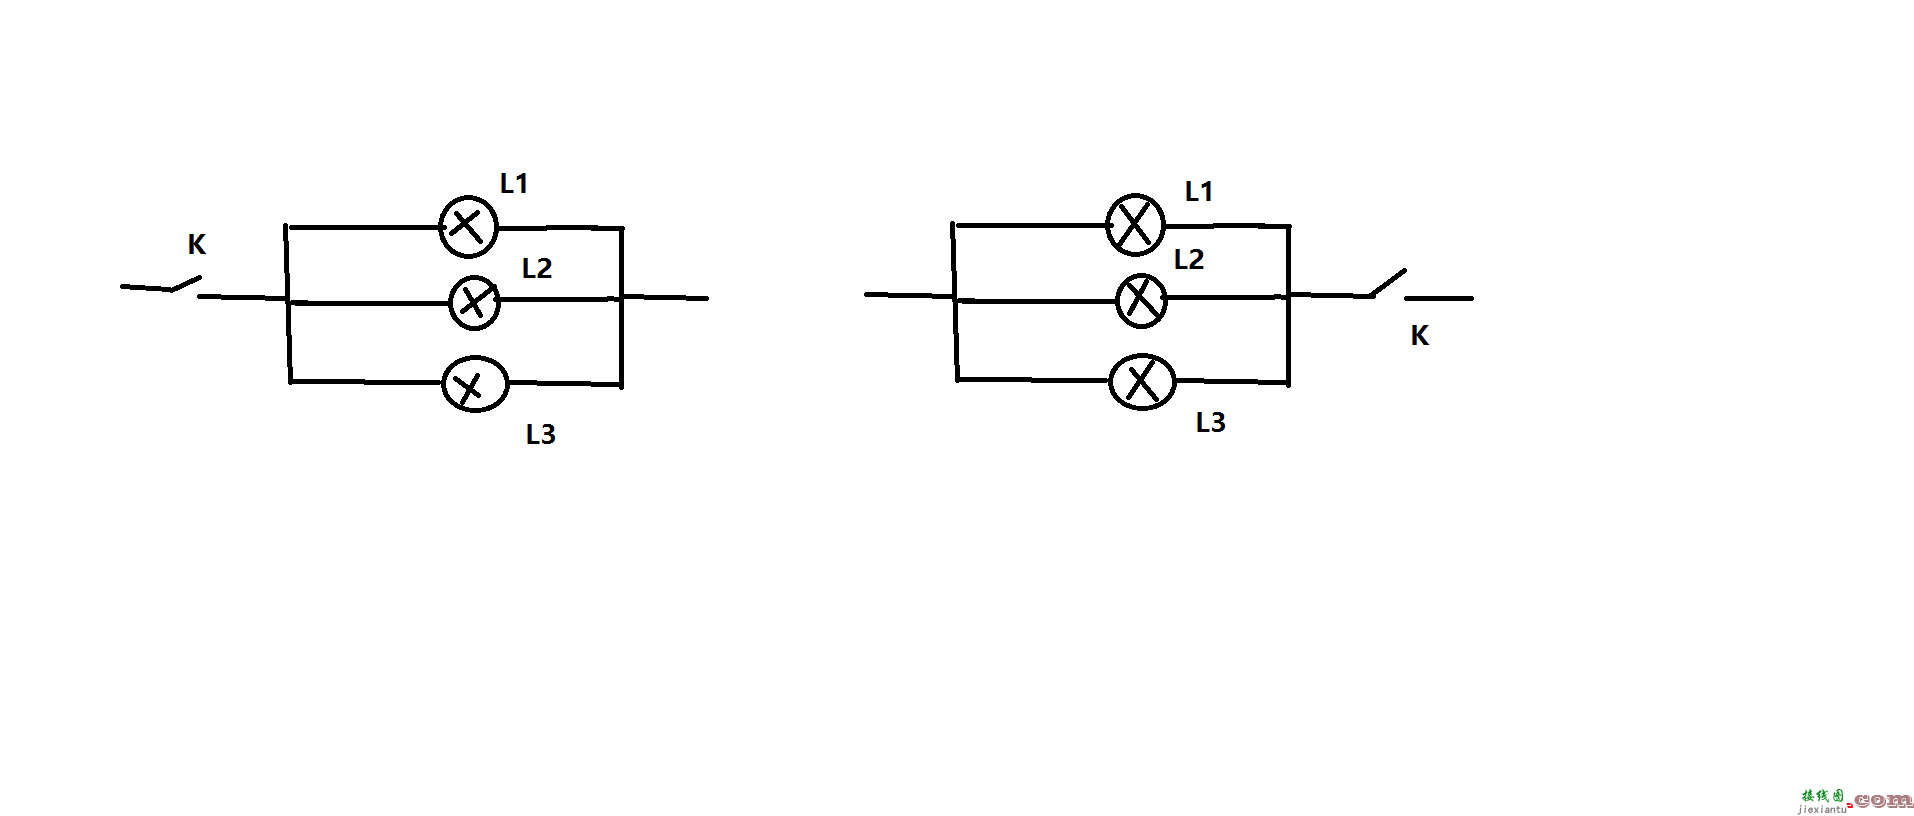 灯泡并联电路及接线图-两个灯泡串联的实物图 第9张